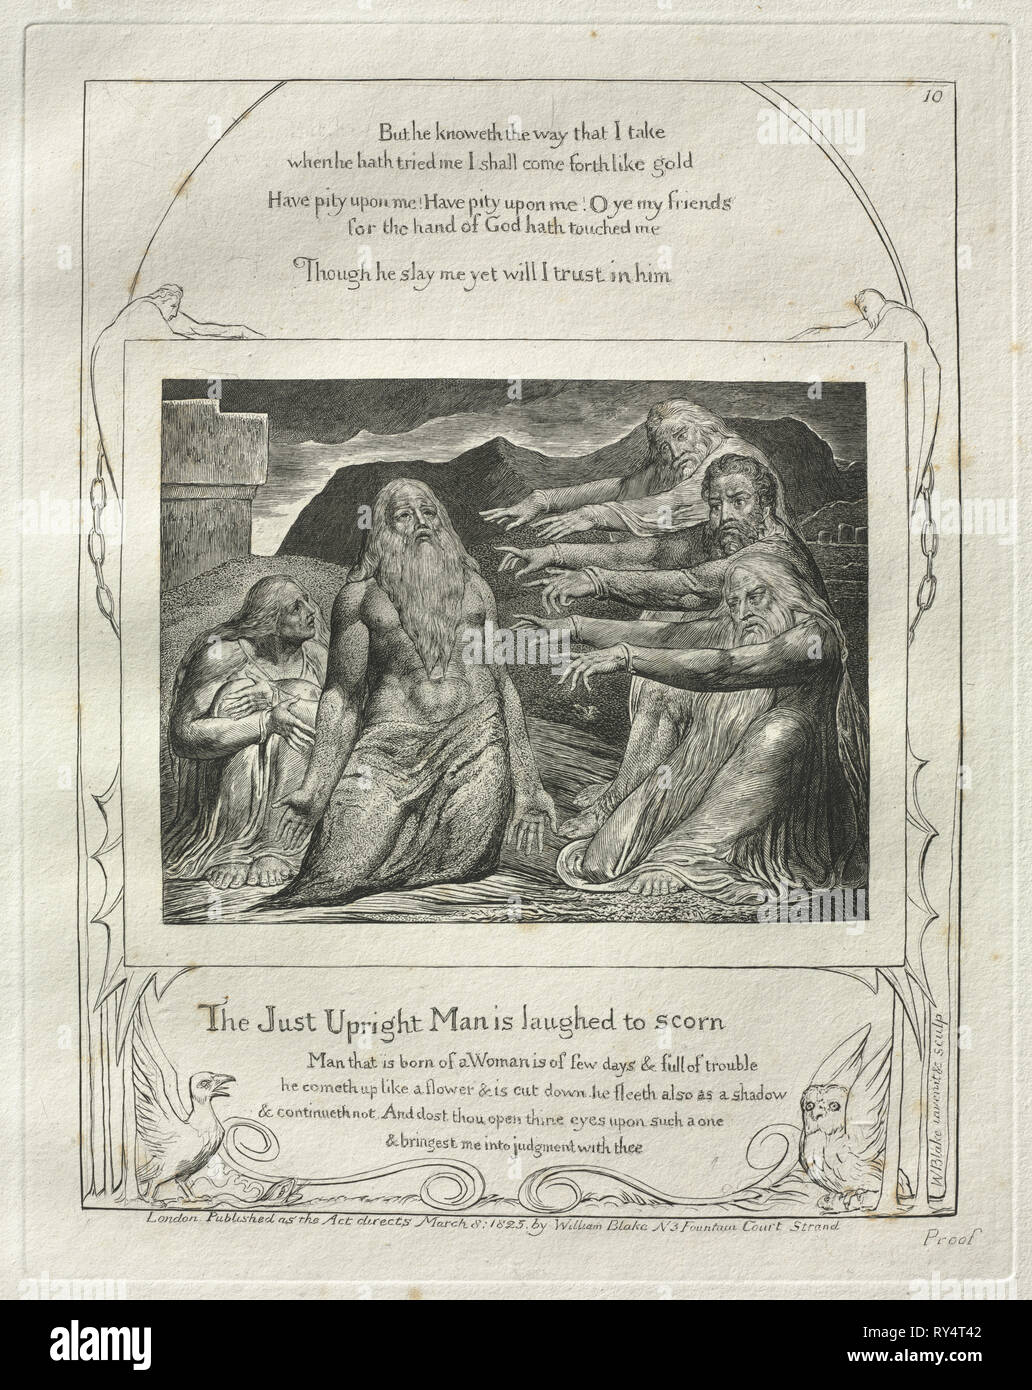 Das Buch Hiob: Pl. 10, die nur aufrechte Mann lachte zu verachten, 1825. William Blake (British, 1757-1827). Gravur Stockfoto